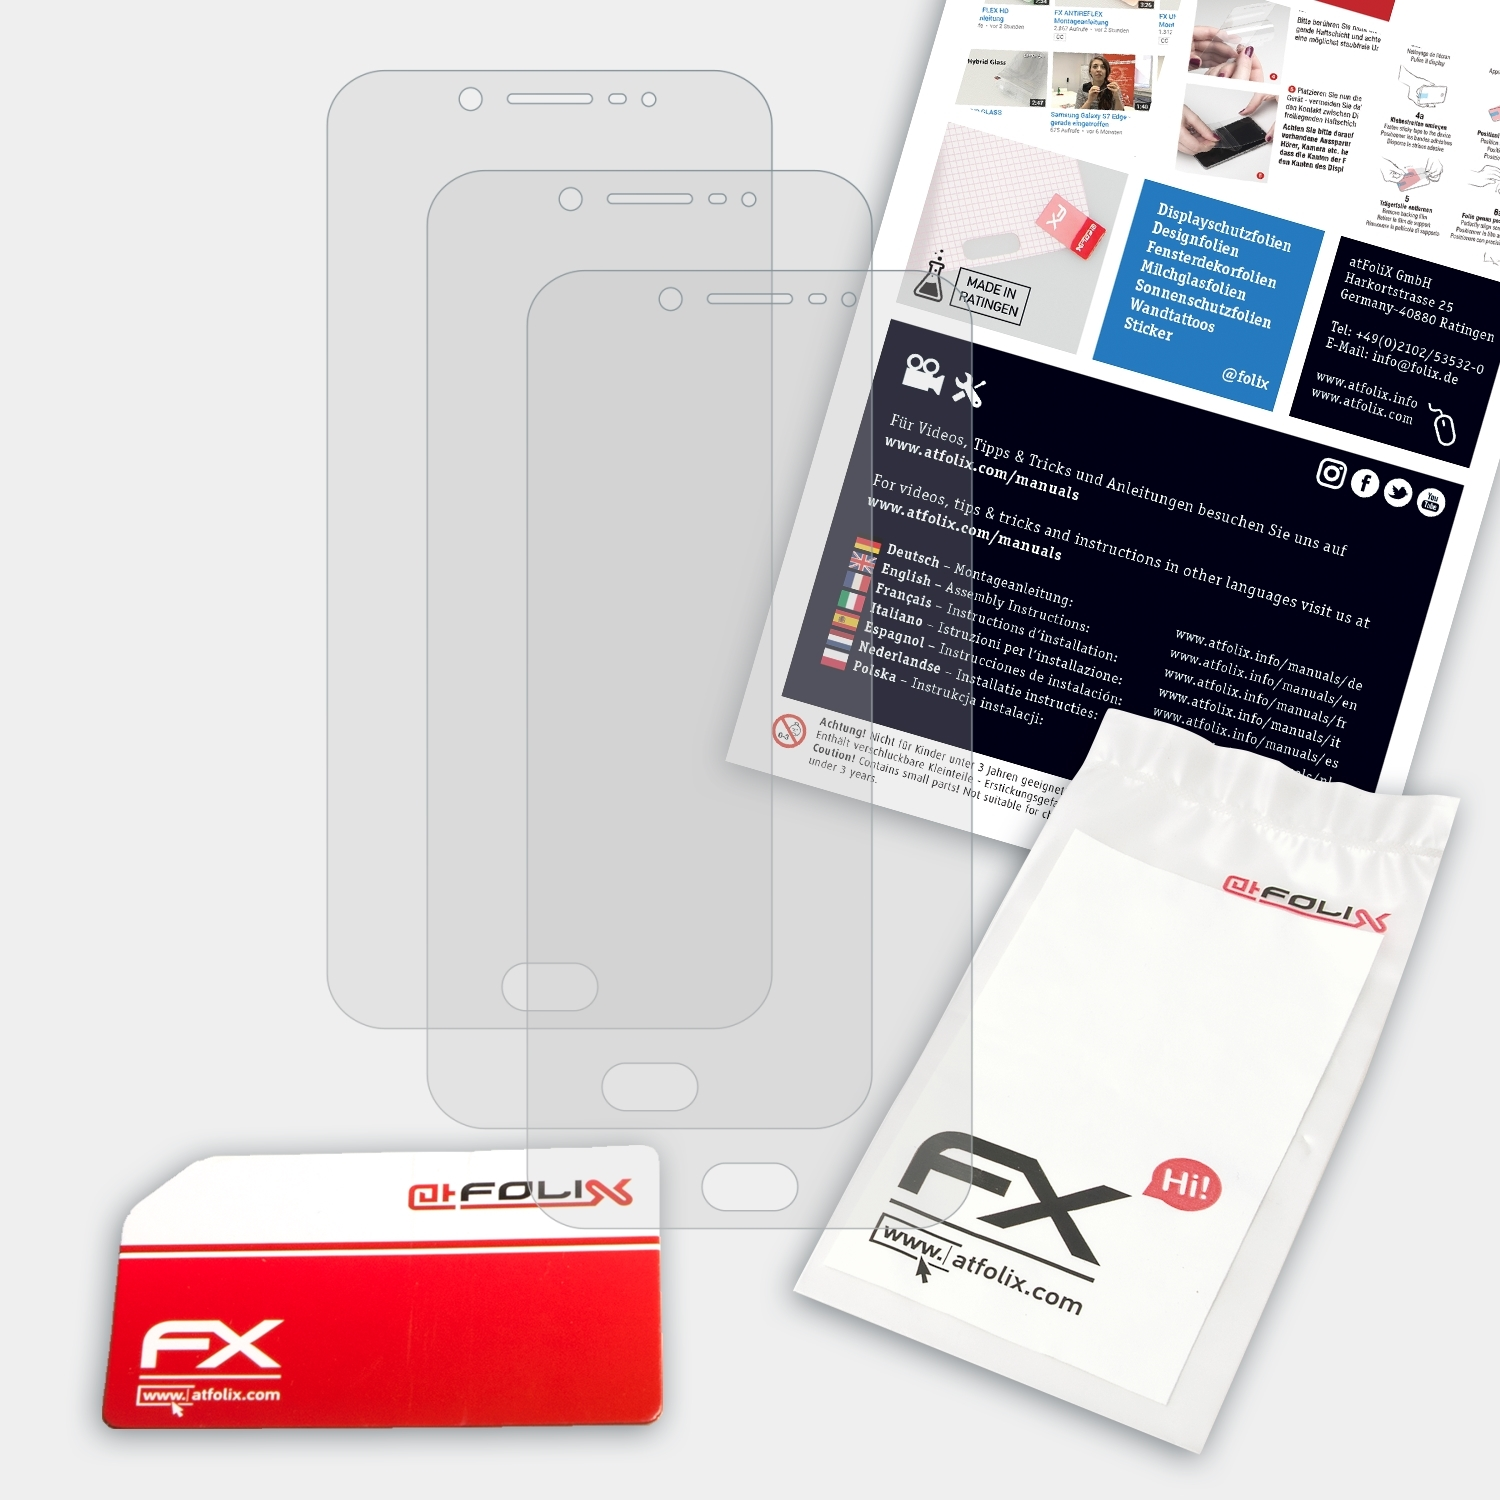 ATFOLIX 3x FX-Antireflex Displayschutz(für Vivo V5S)